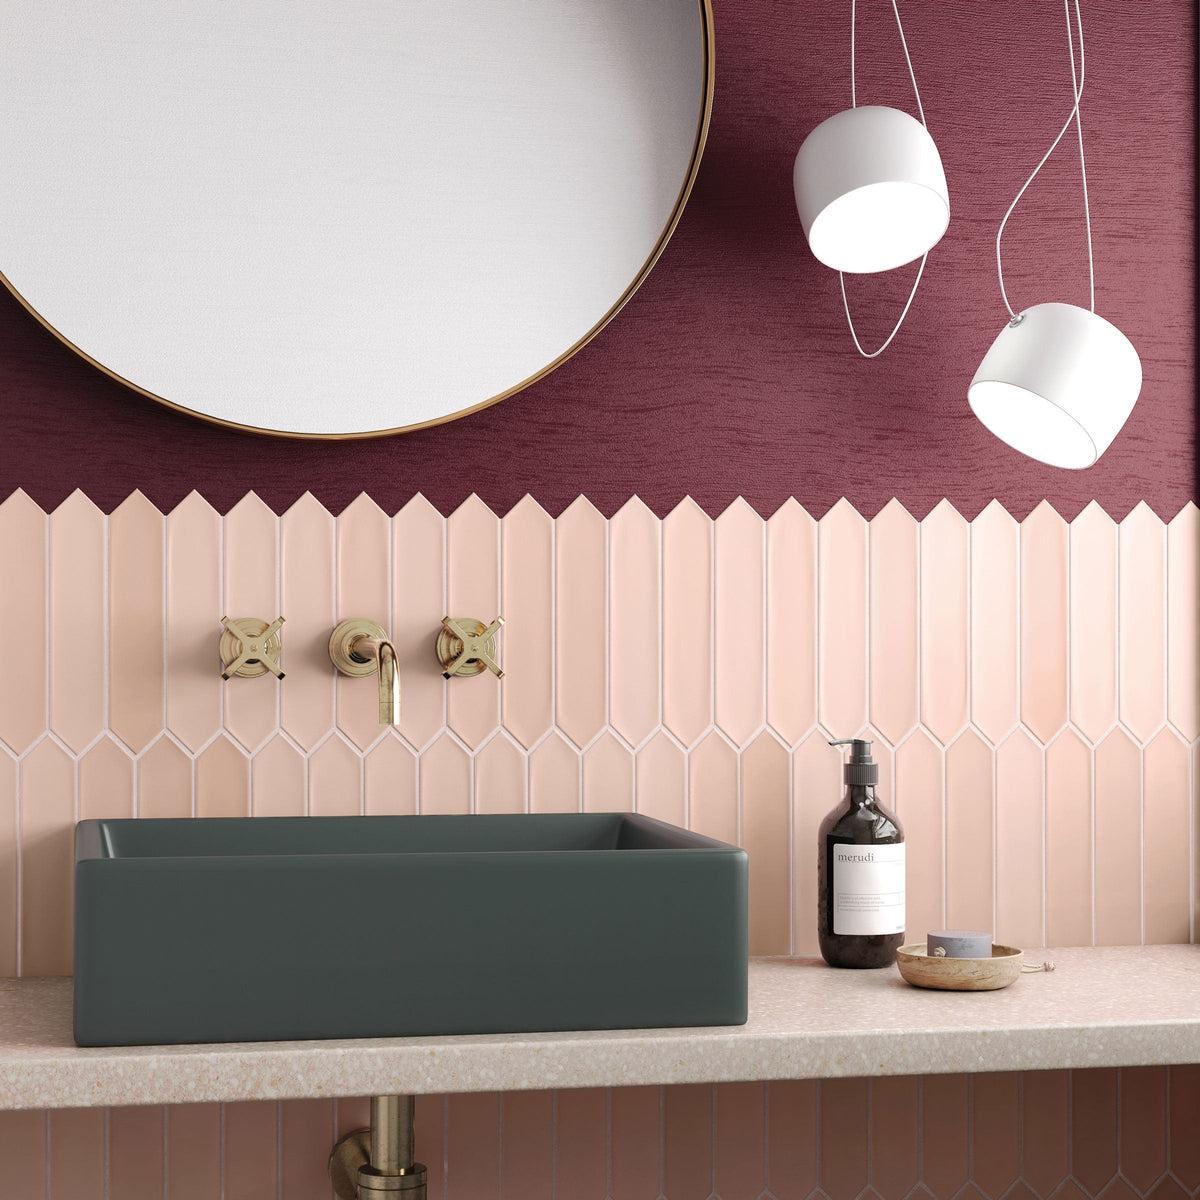 Rose pink ceramic picket bathroom backsplash tile